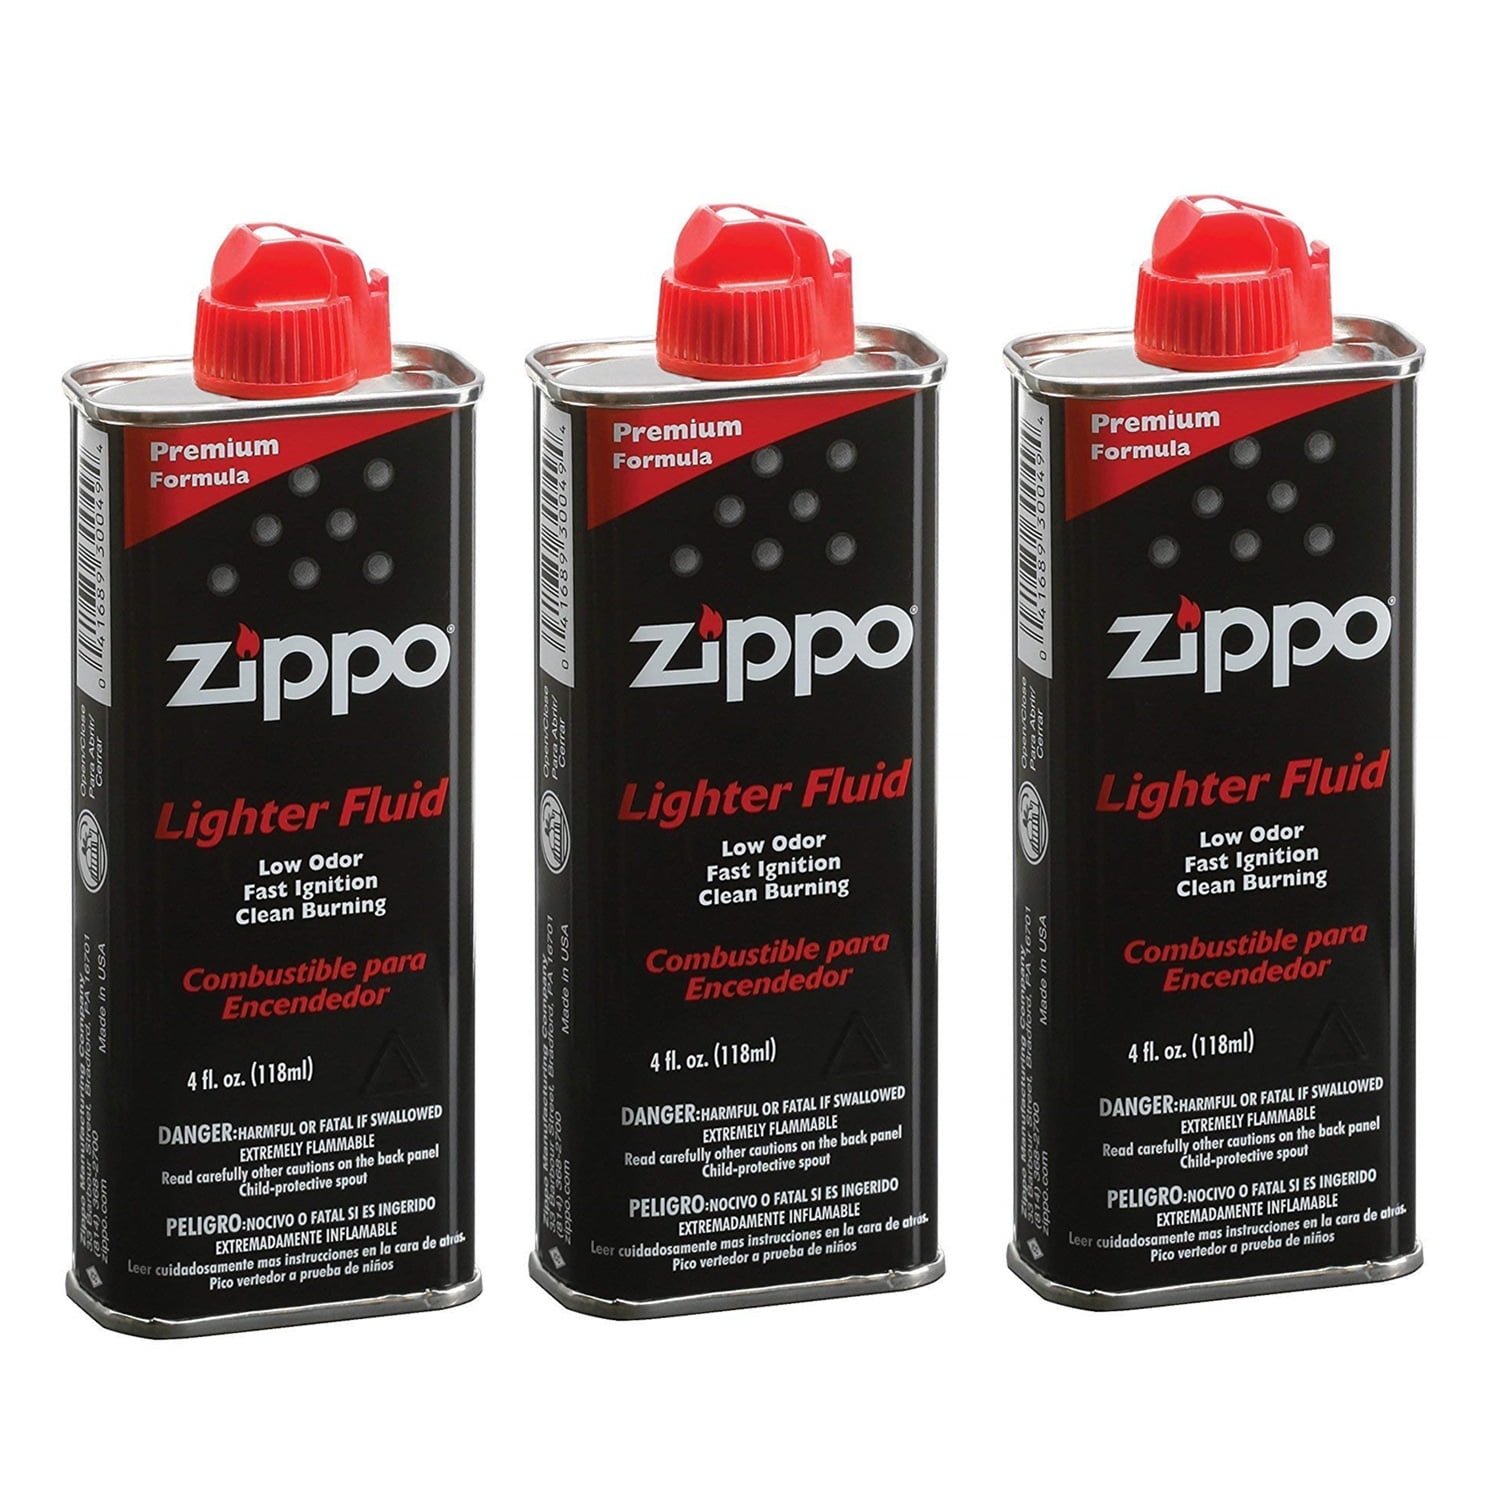 zippo lighter fluid reviews